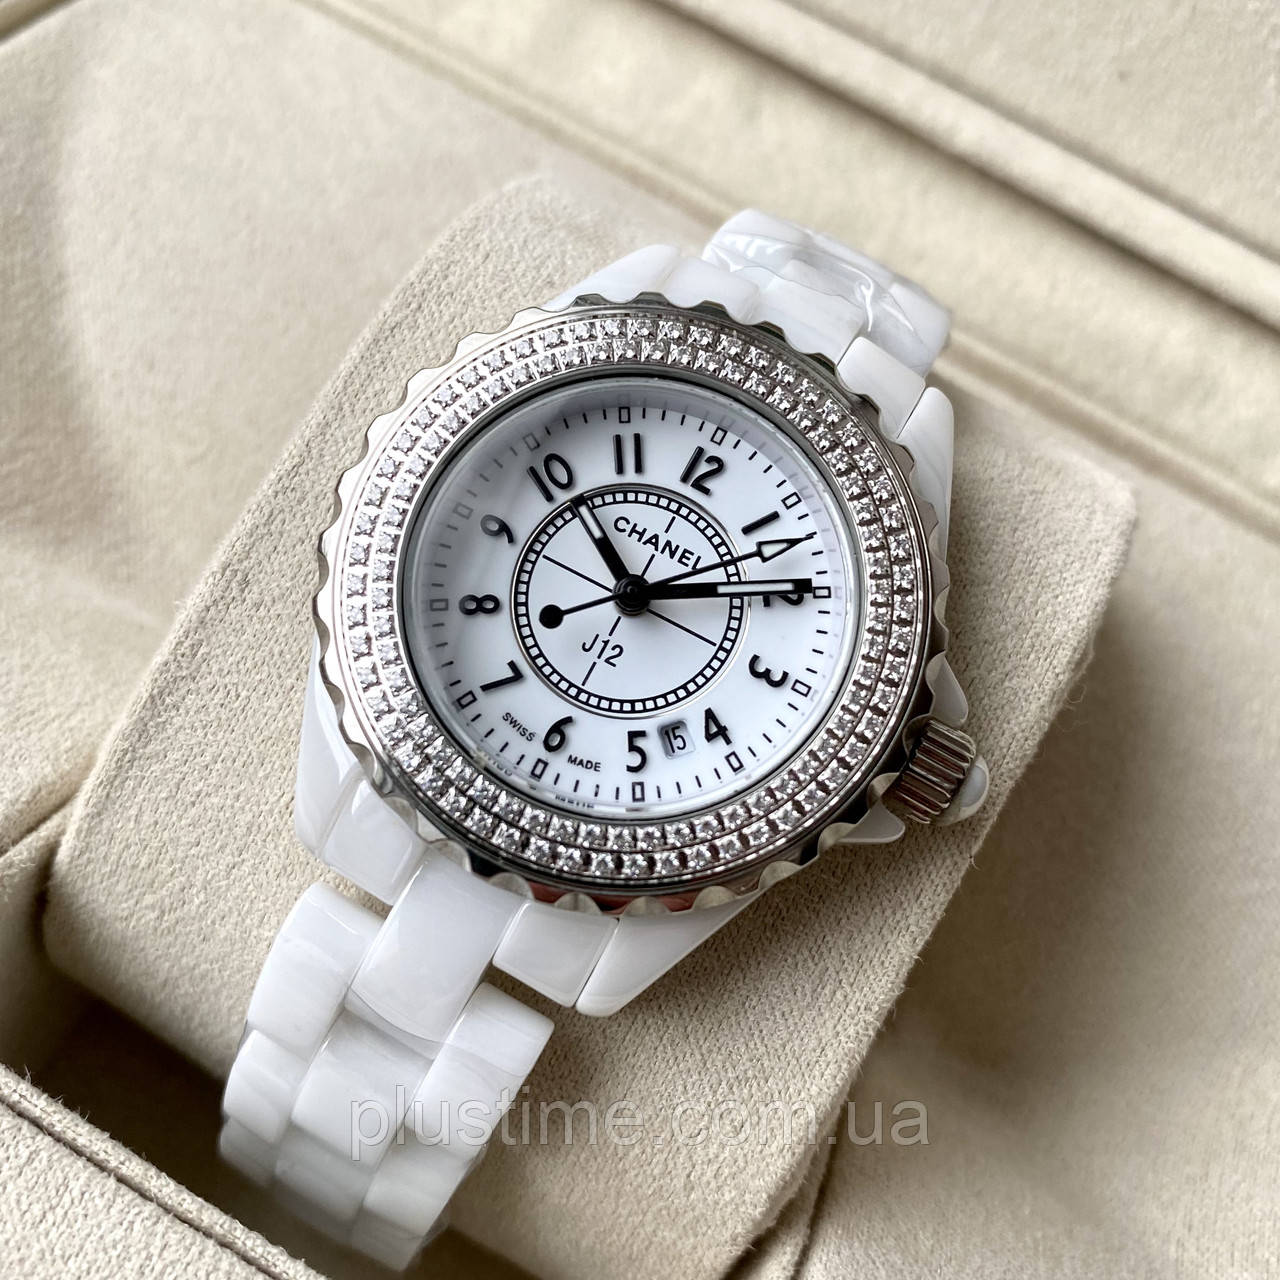 Часы Chanel J12 Automatic Ceramic Diamonds J12 36086 купить в Москве  выгодная цена  ломбард на Кутузовском